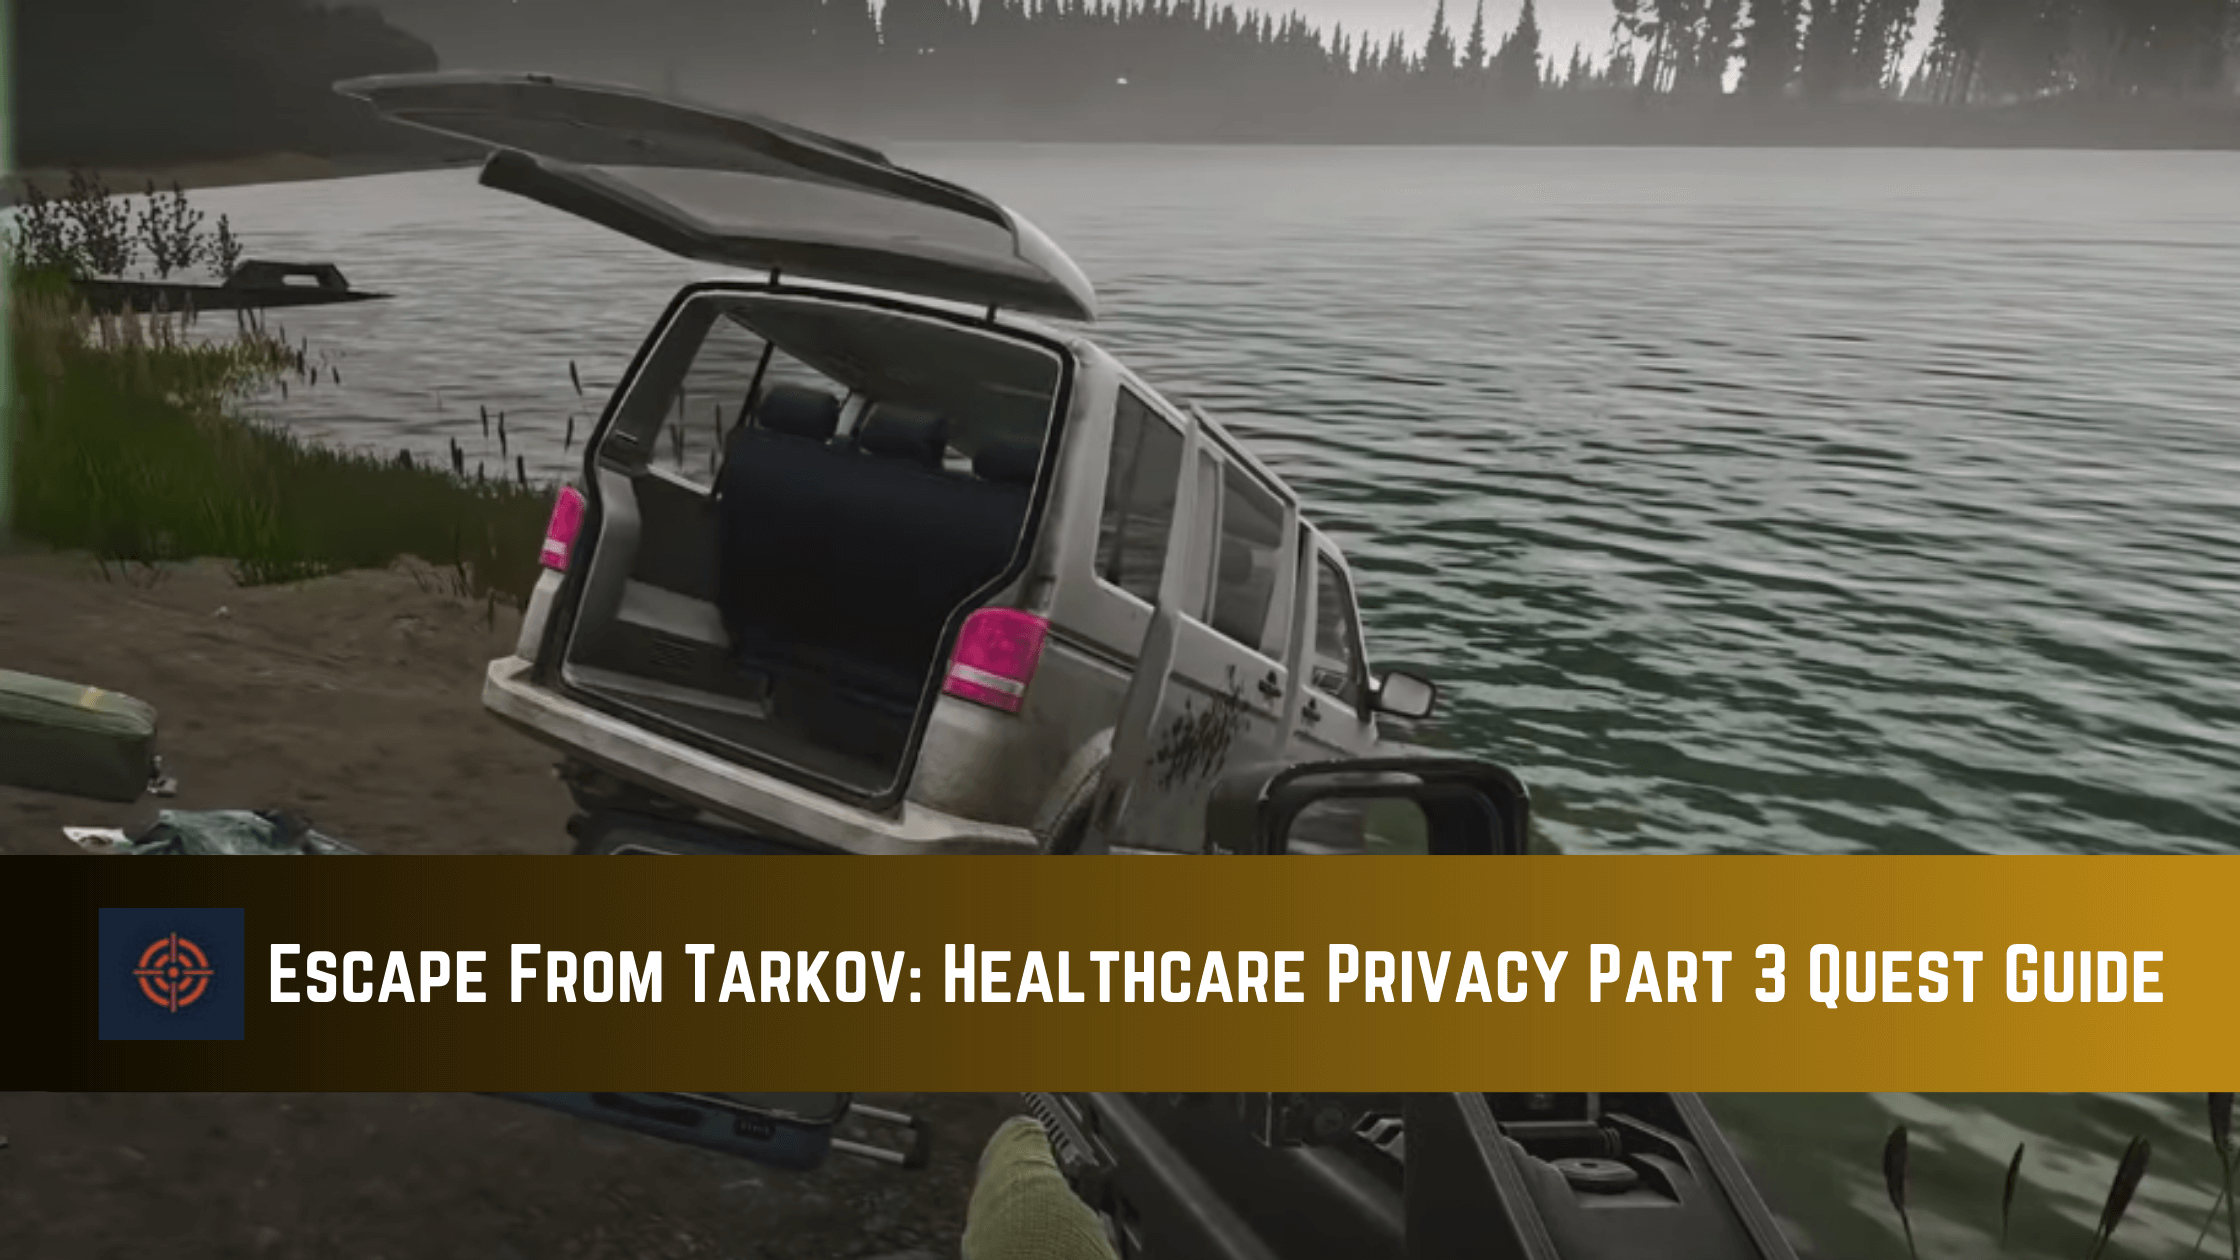 Escape From Tarkov Healthcare Privacy Part 3 Quest Guide